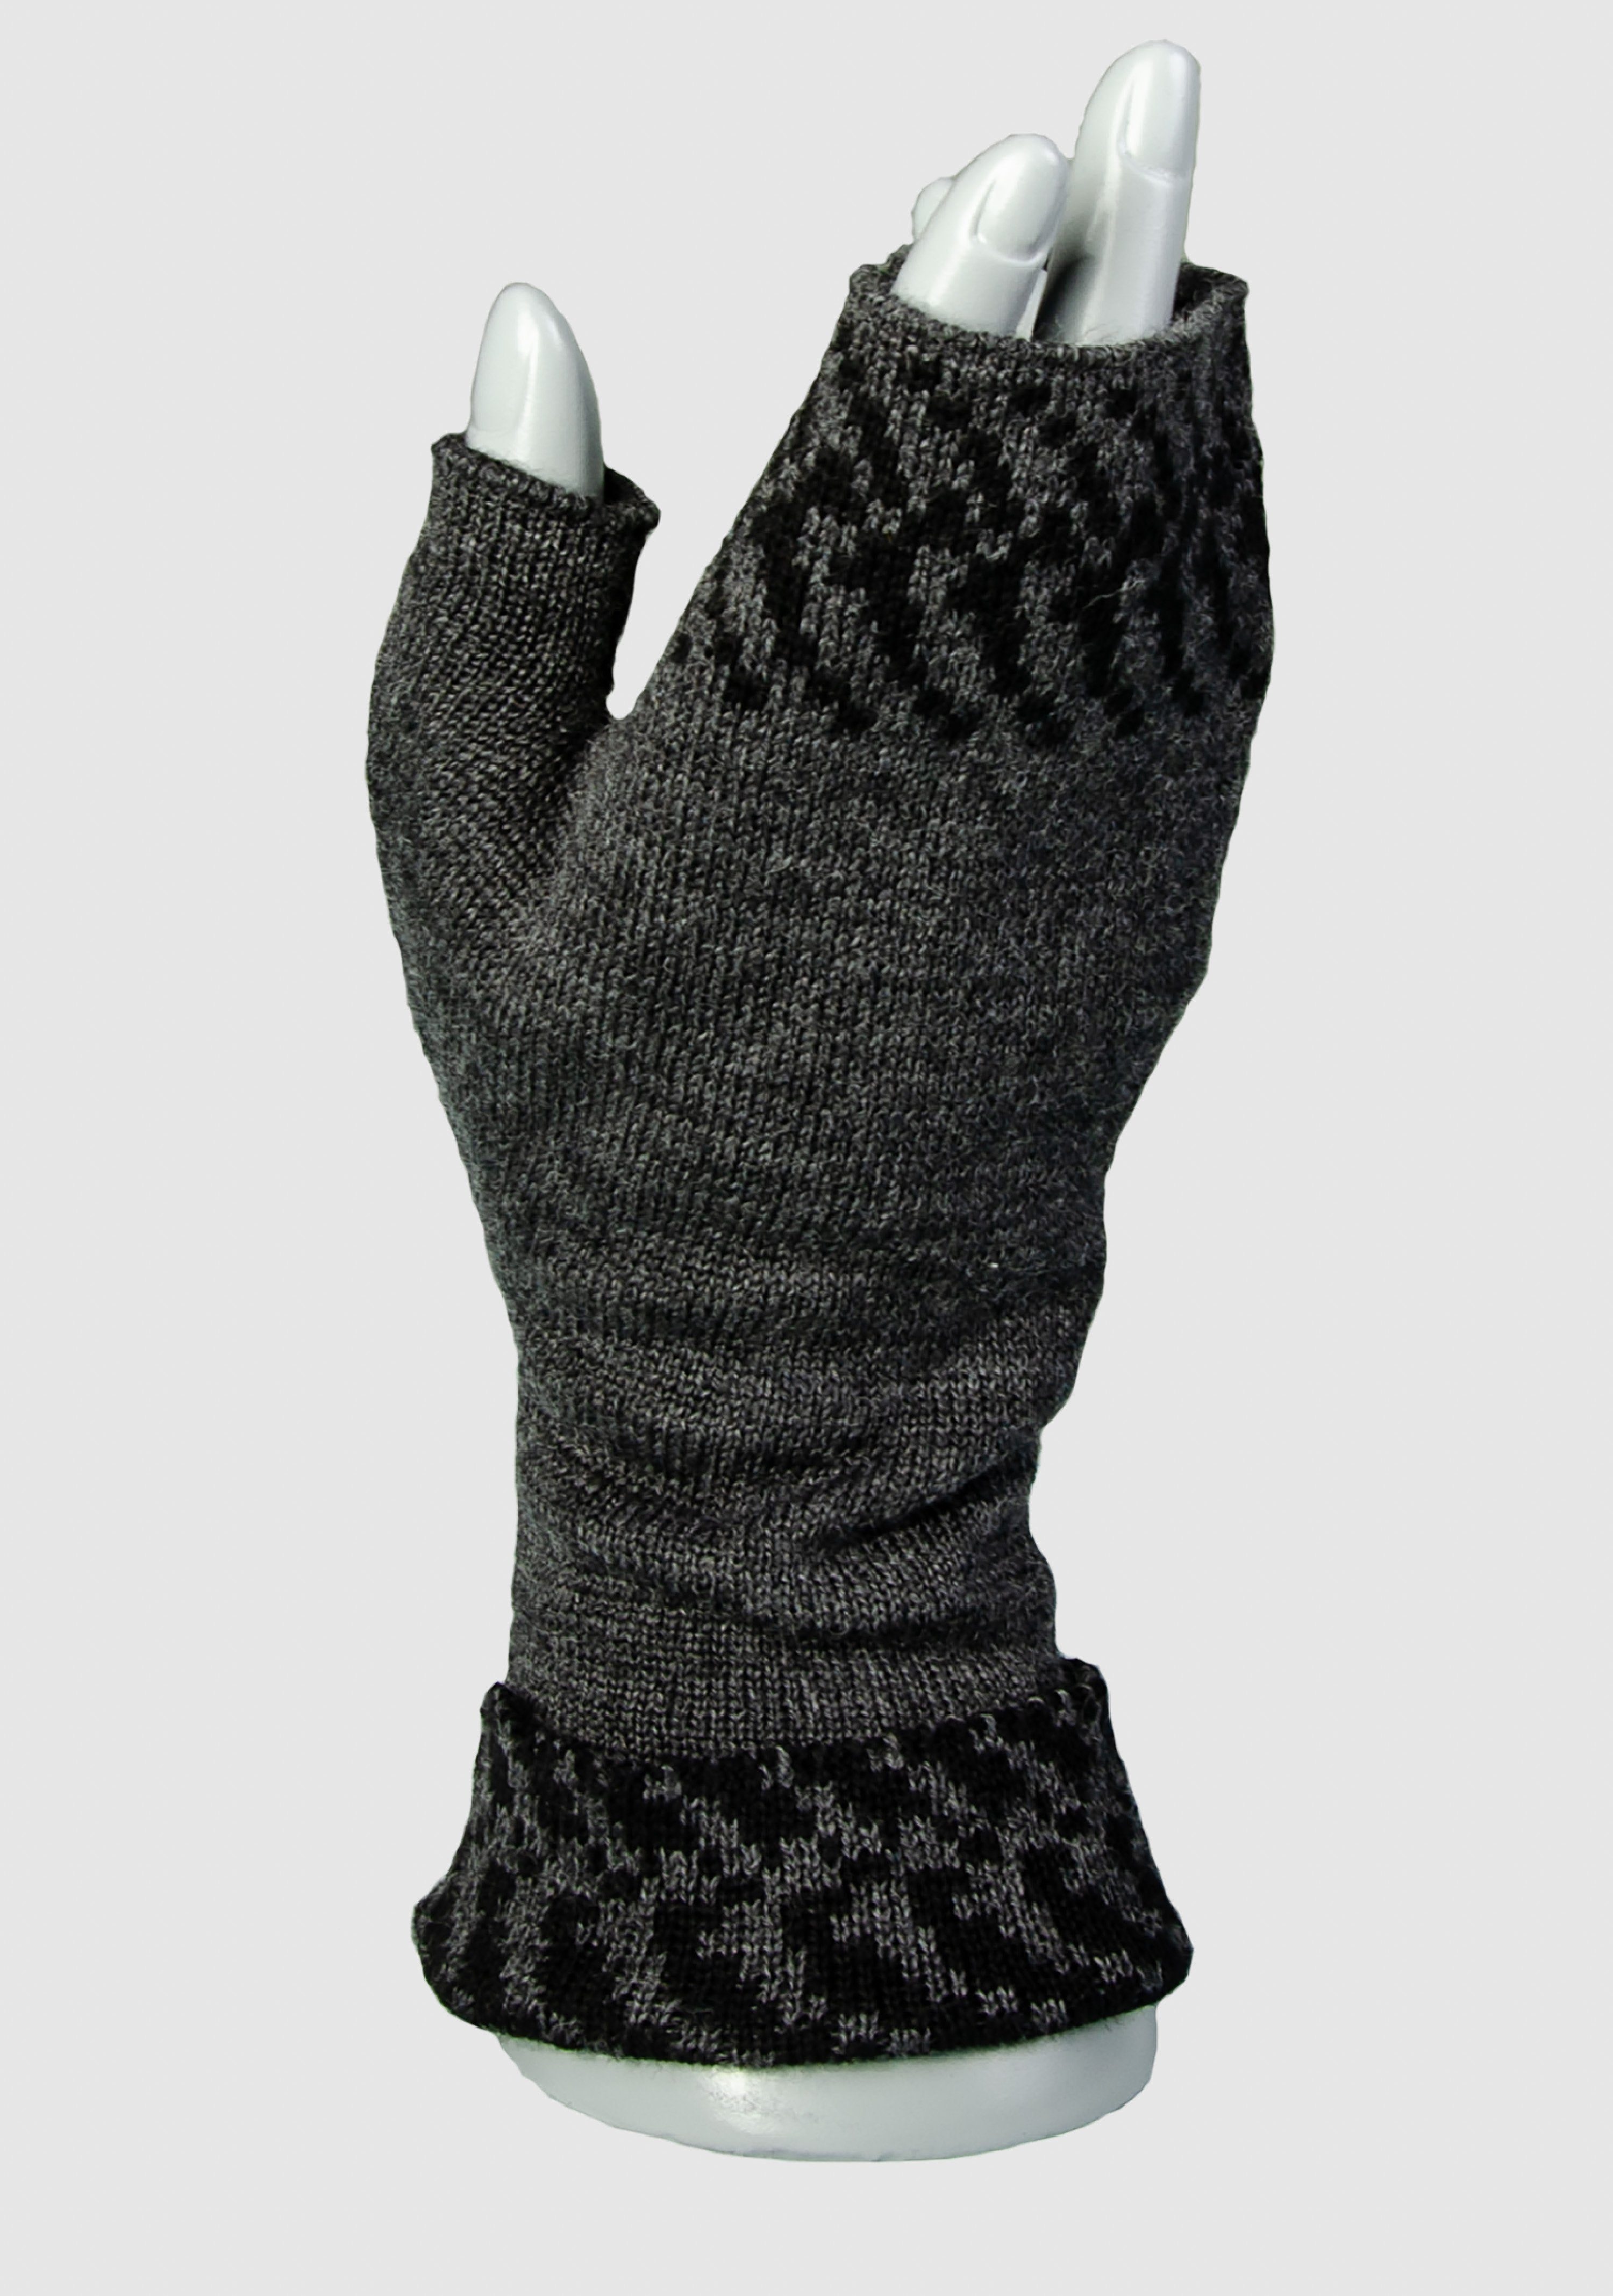 Pixel Handwärmer Merino slow fashion Strickhandschuhe extrasoft aus in Farben vielen Merino LANARTO 100% anthrazit_schwarz